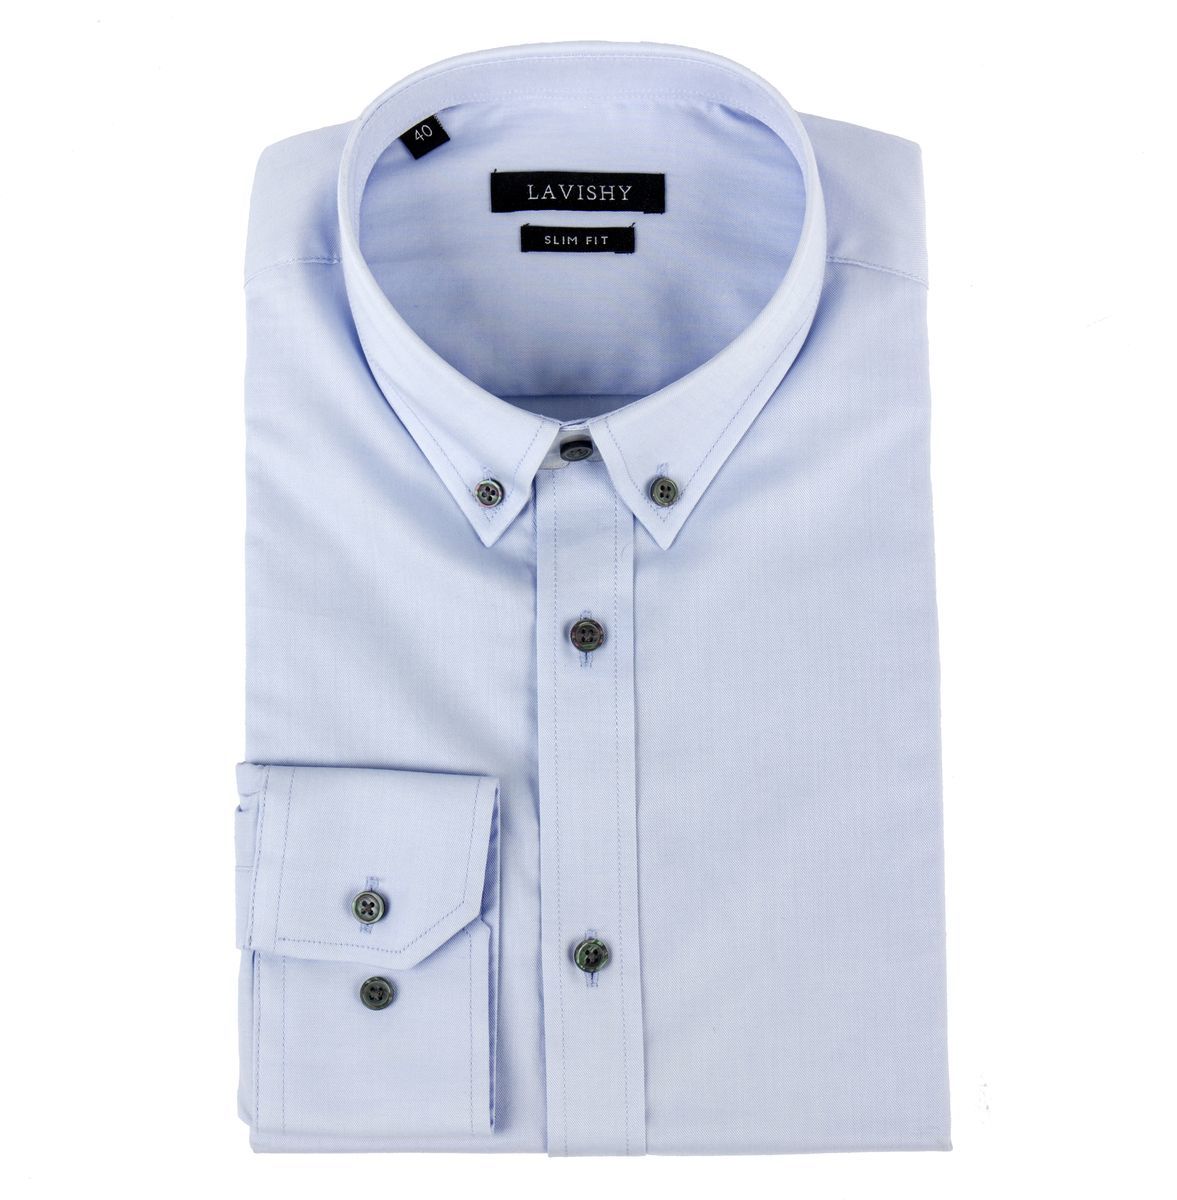 Рубашка цум. Marco Zanetti рубашка мужская. La Valliere рубашка мужская. Мужские рубашки премиум. Сорочки мужские премиум класса.